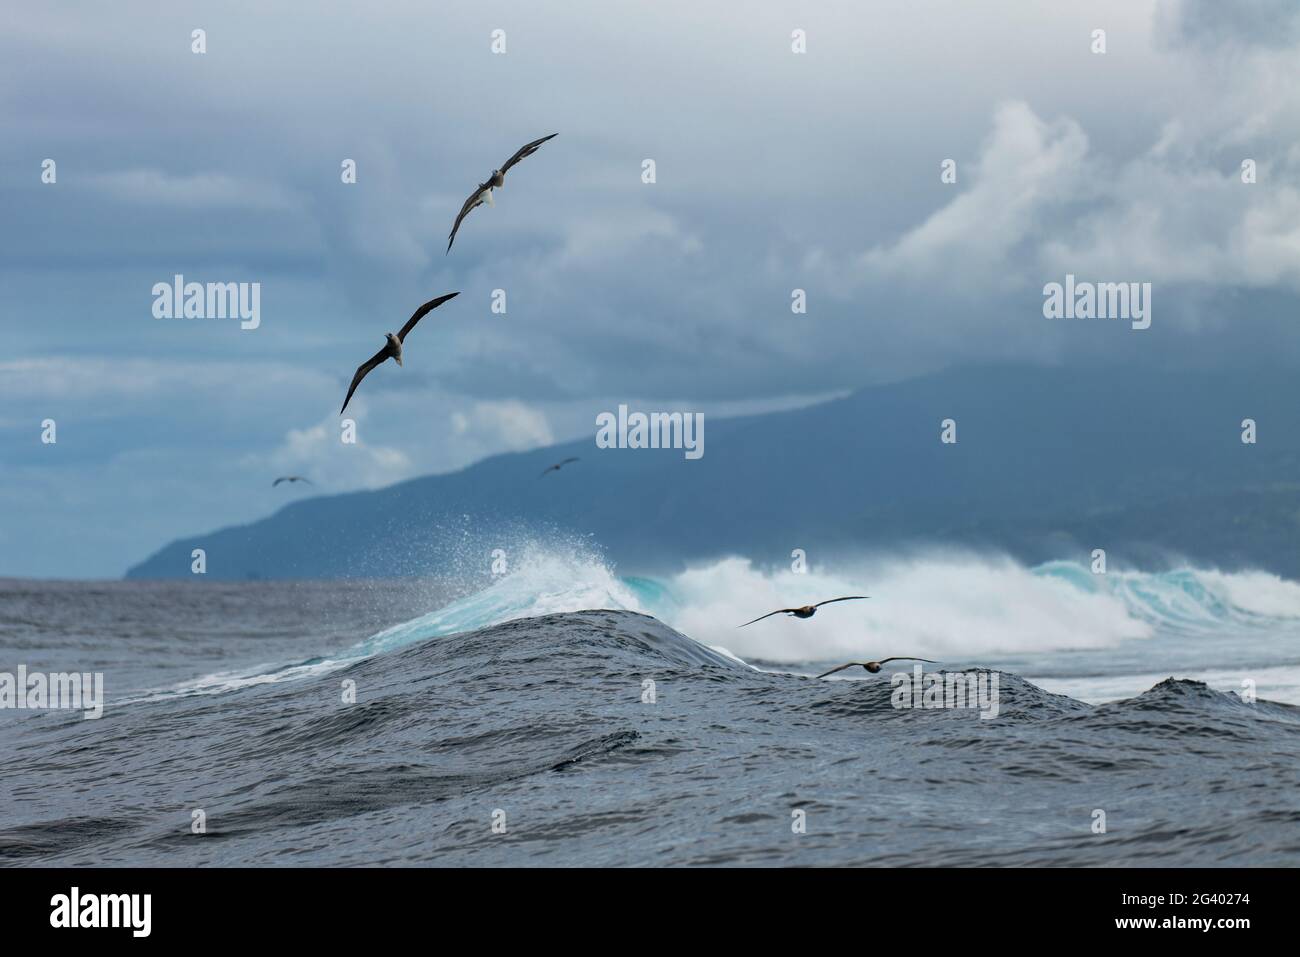 Des oiseaux survolent les vagues dans la zone de surf Teahupoo, Tahiti Iti, Tahiti, les îles du vent, Polynésie française, Pacifique Sud Banque D'Images